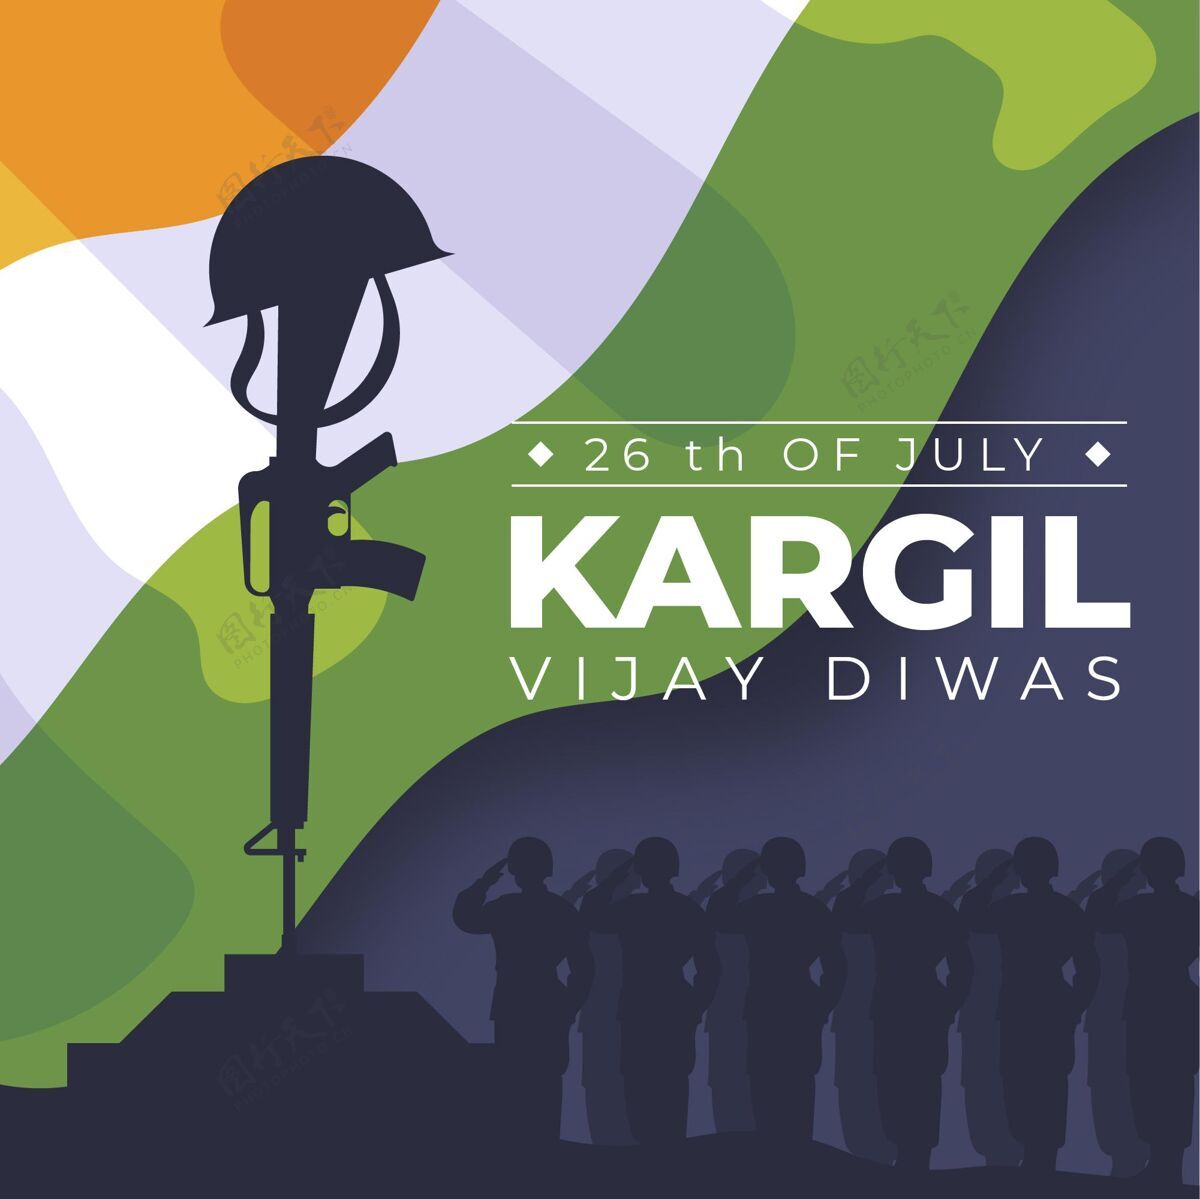 荣誉卡吉尔·维杰·迪瓦兹公寓的插图庆祝印度印度